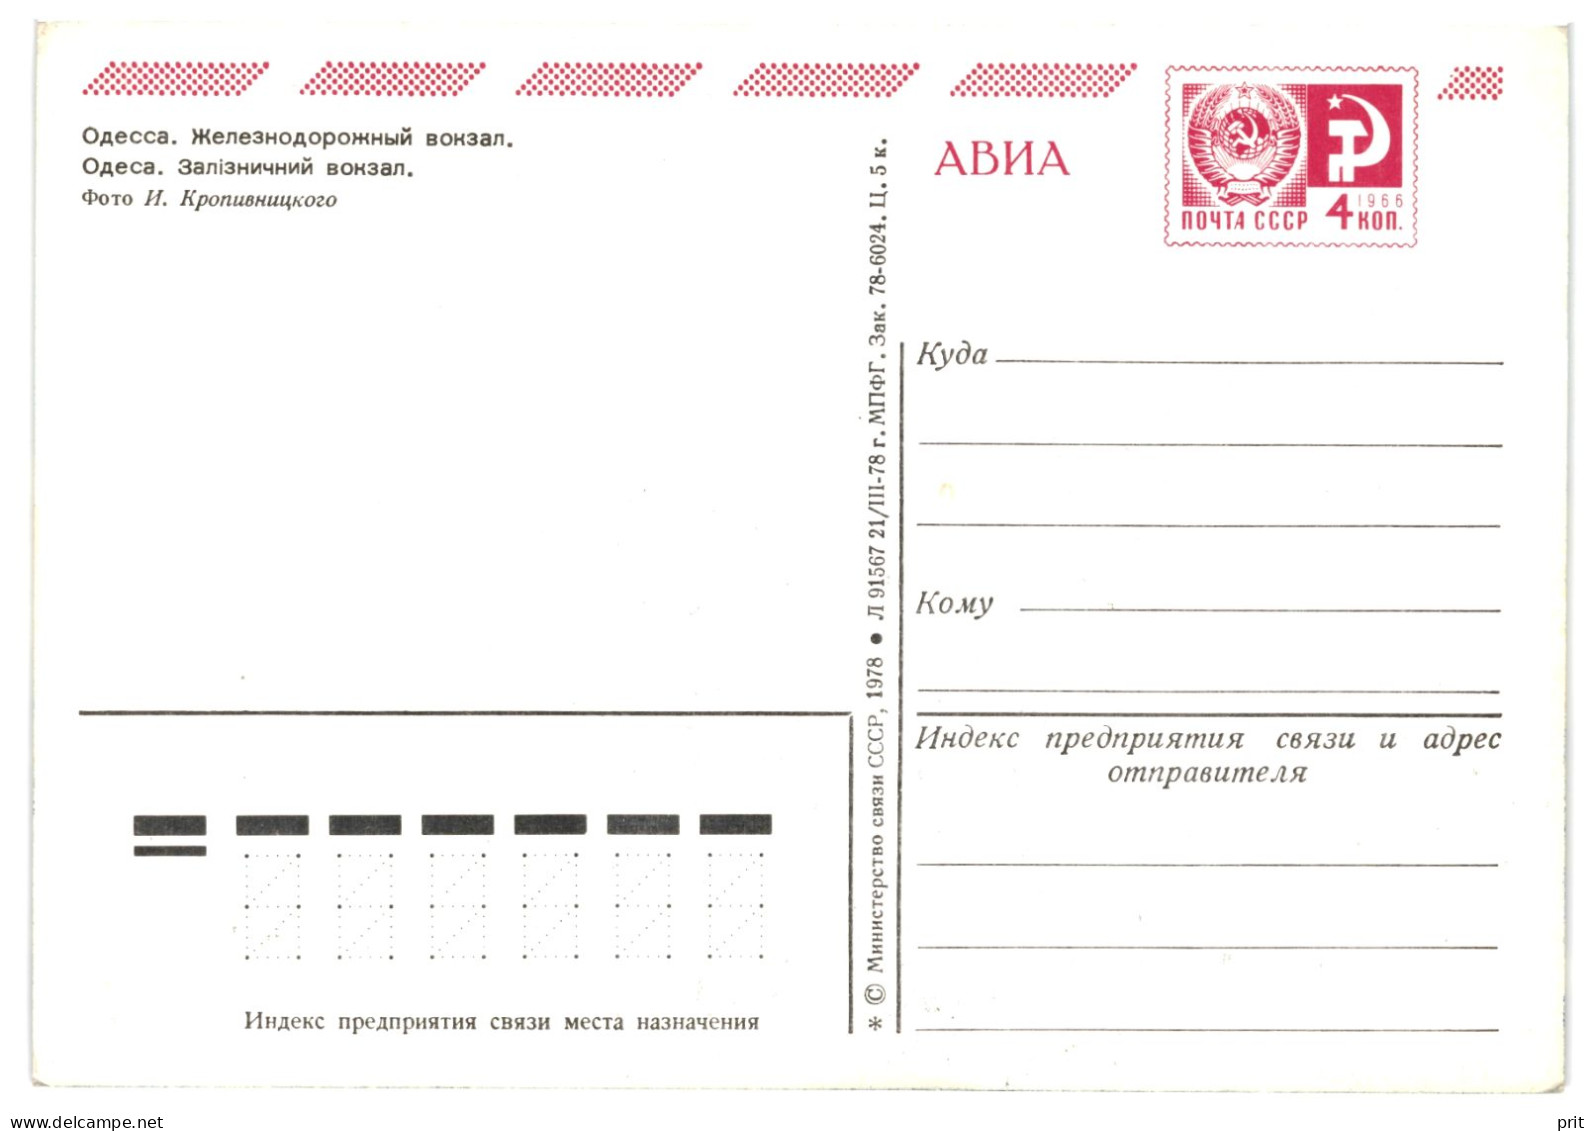 Odessa International Railway Sattion, Soviet Ukraine USSR 1978 4Kop Stamped Air Avia Stationery Card Postcard Unused - 1970-79